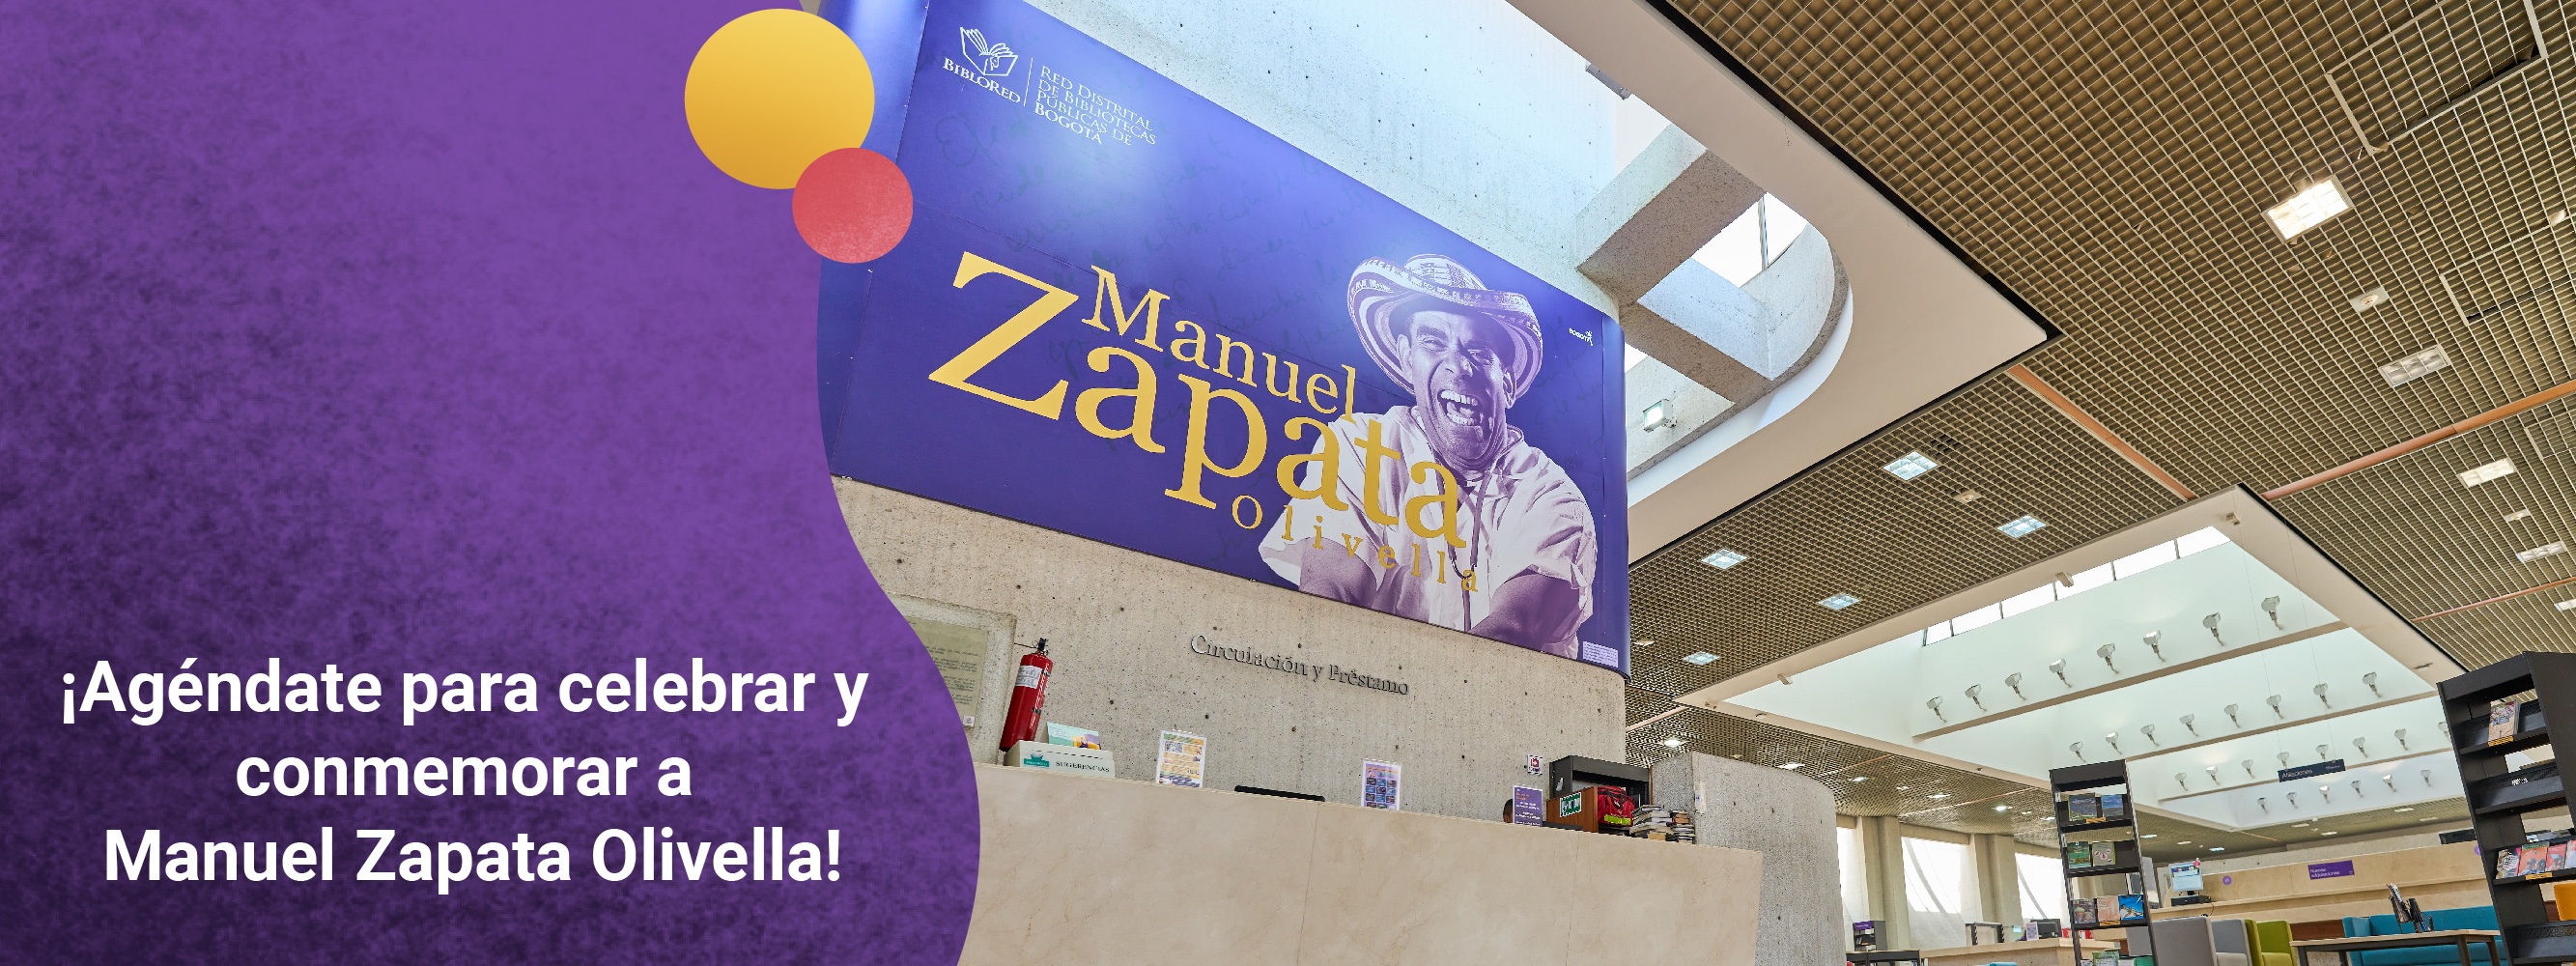 ¡Agéndate para celebrar y conmemorar a Manuel Zapata Olivella!